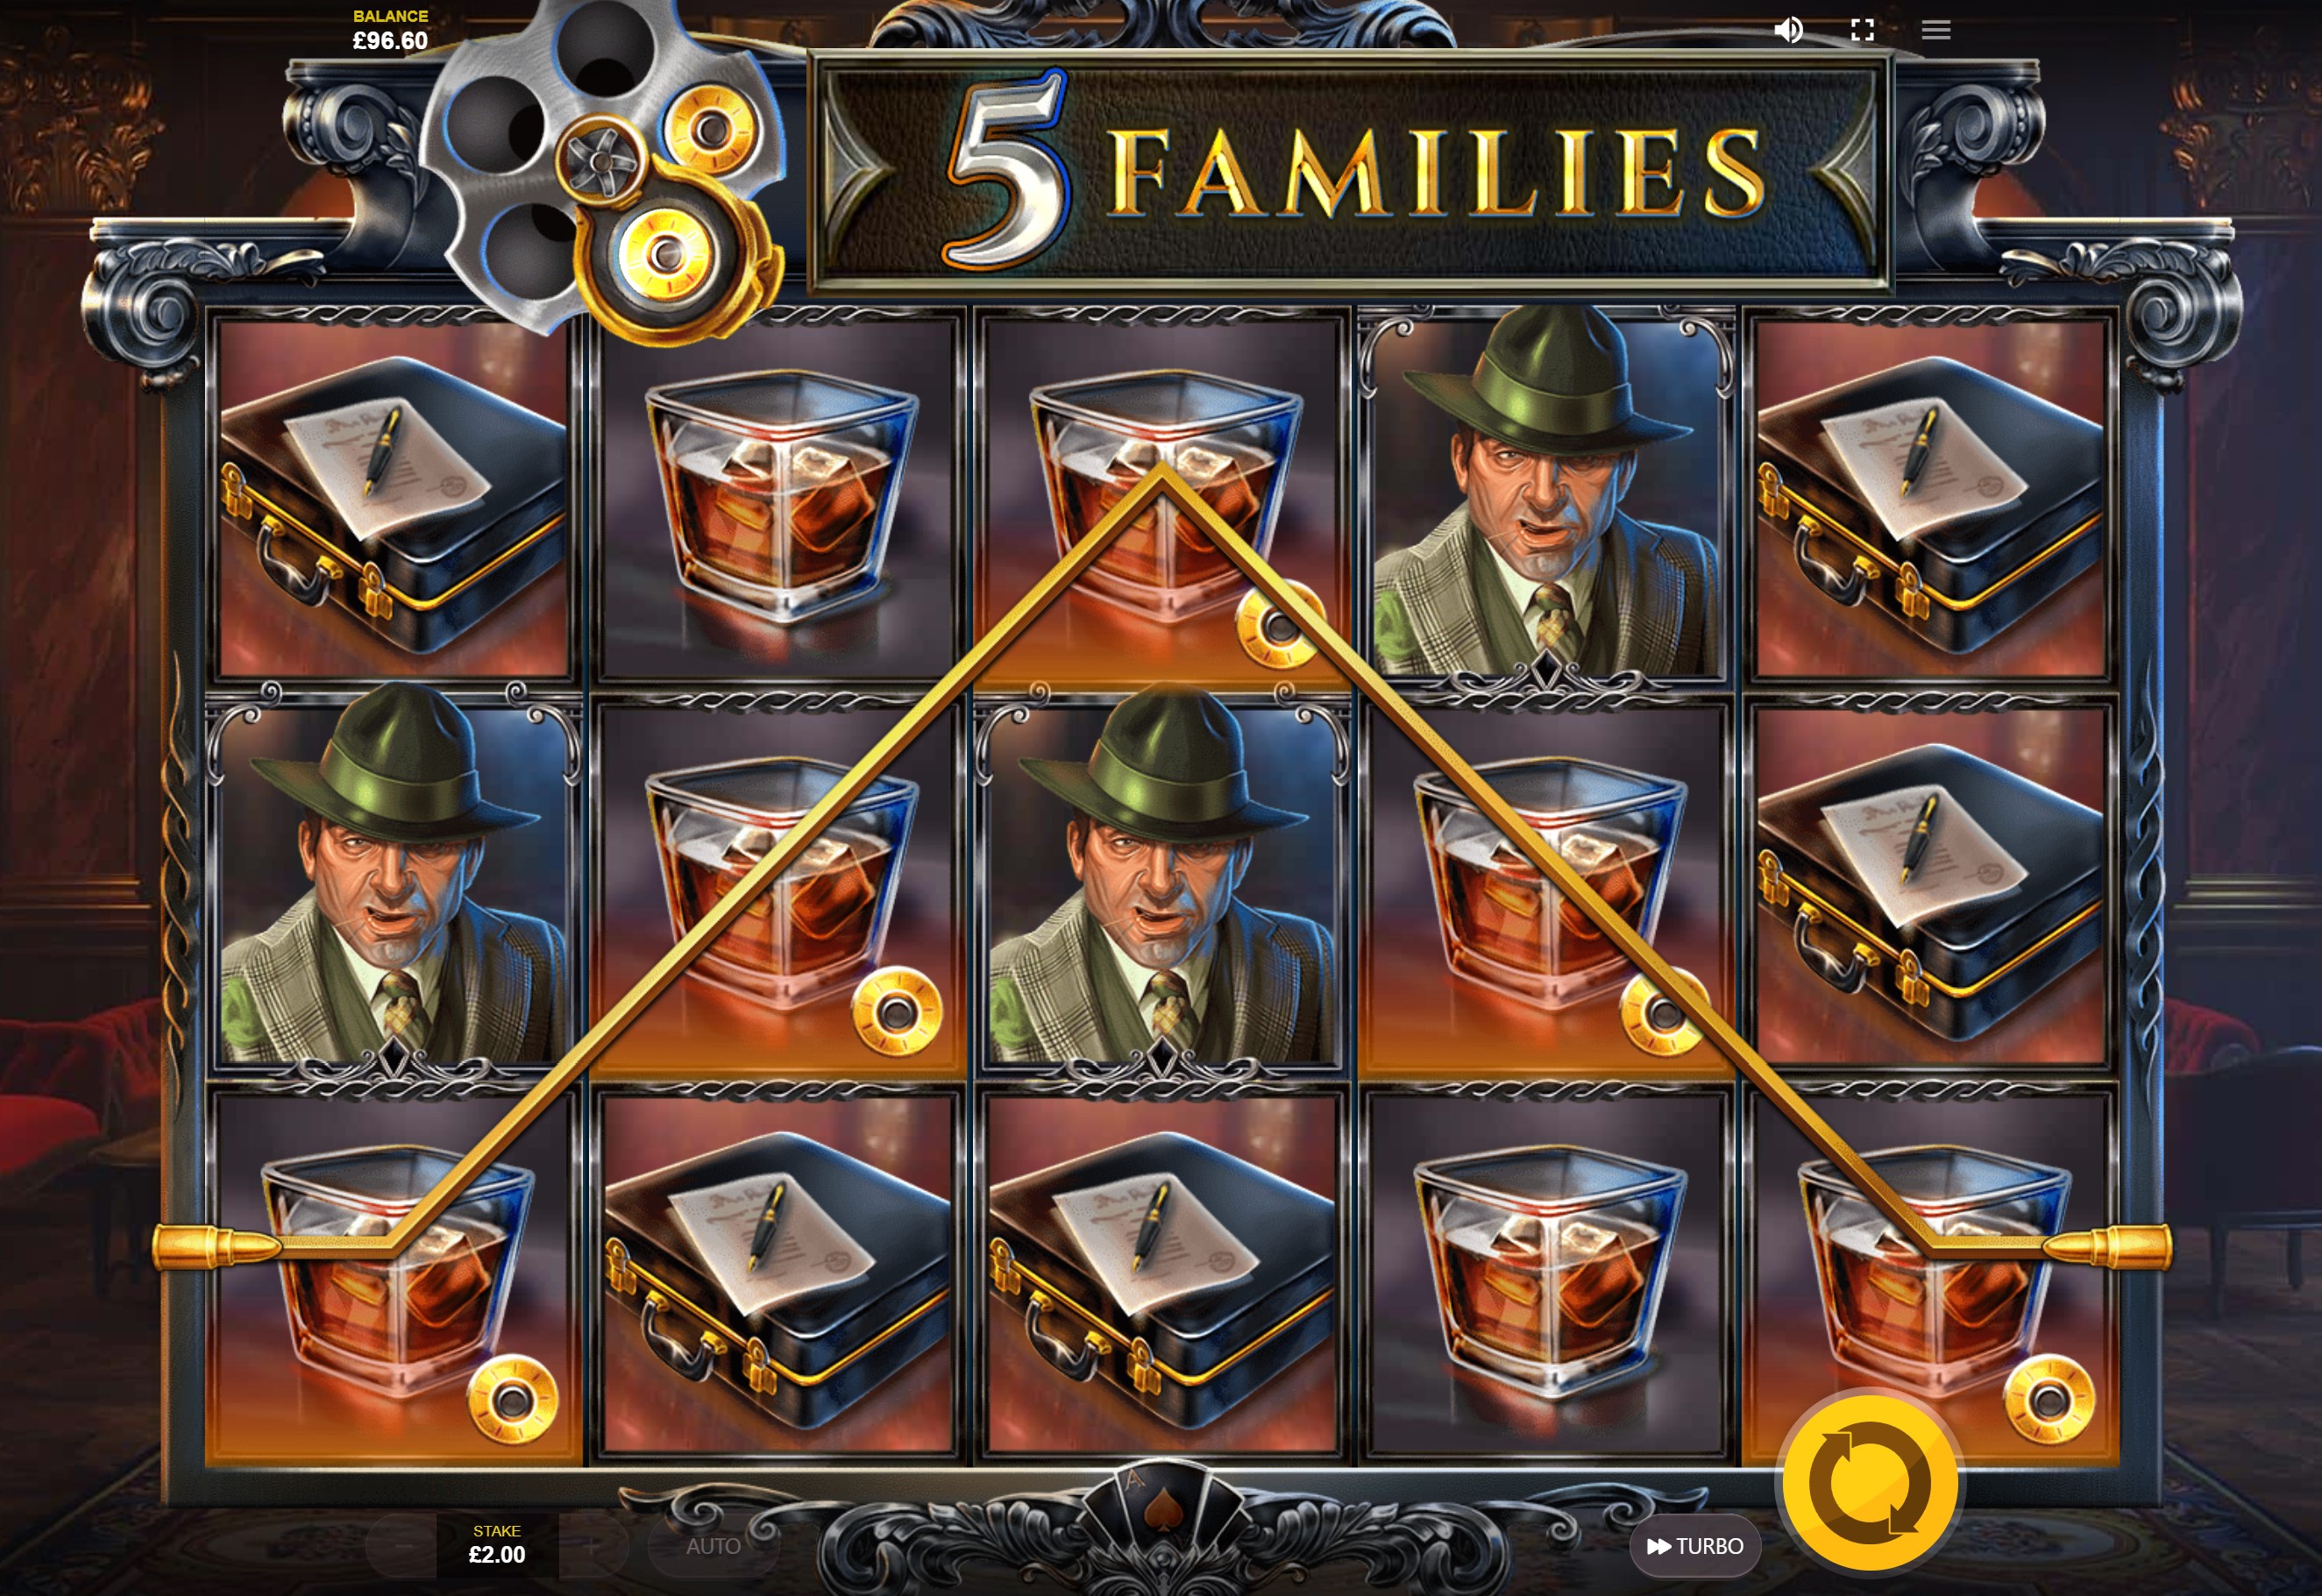 5 Families slot